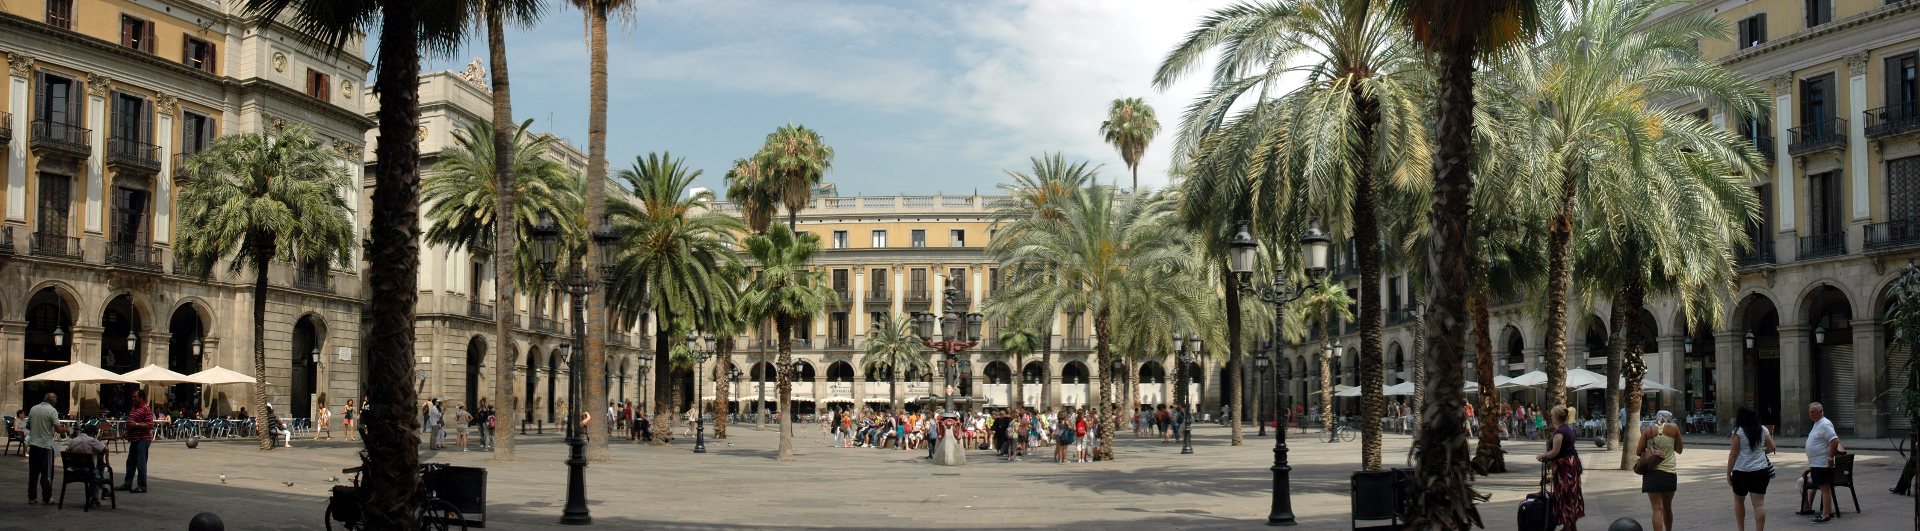 Barcelona Placa Reial - Josep Renalias (CC BY SA 3.0)